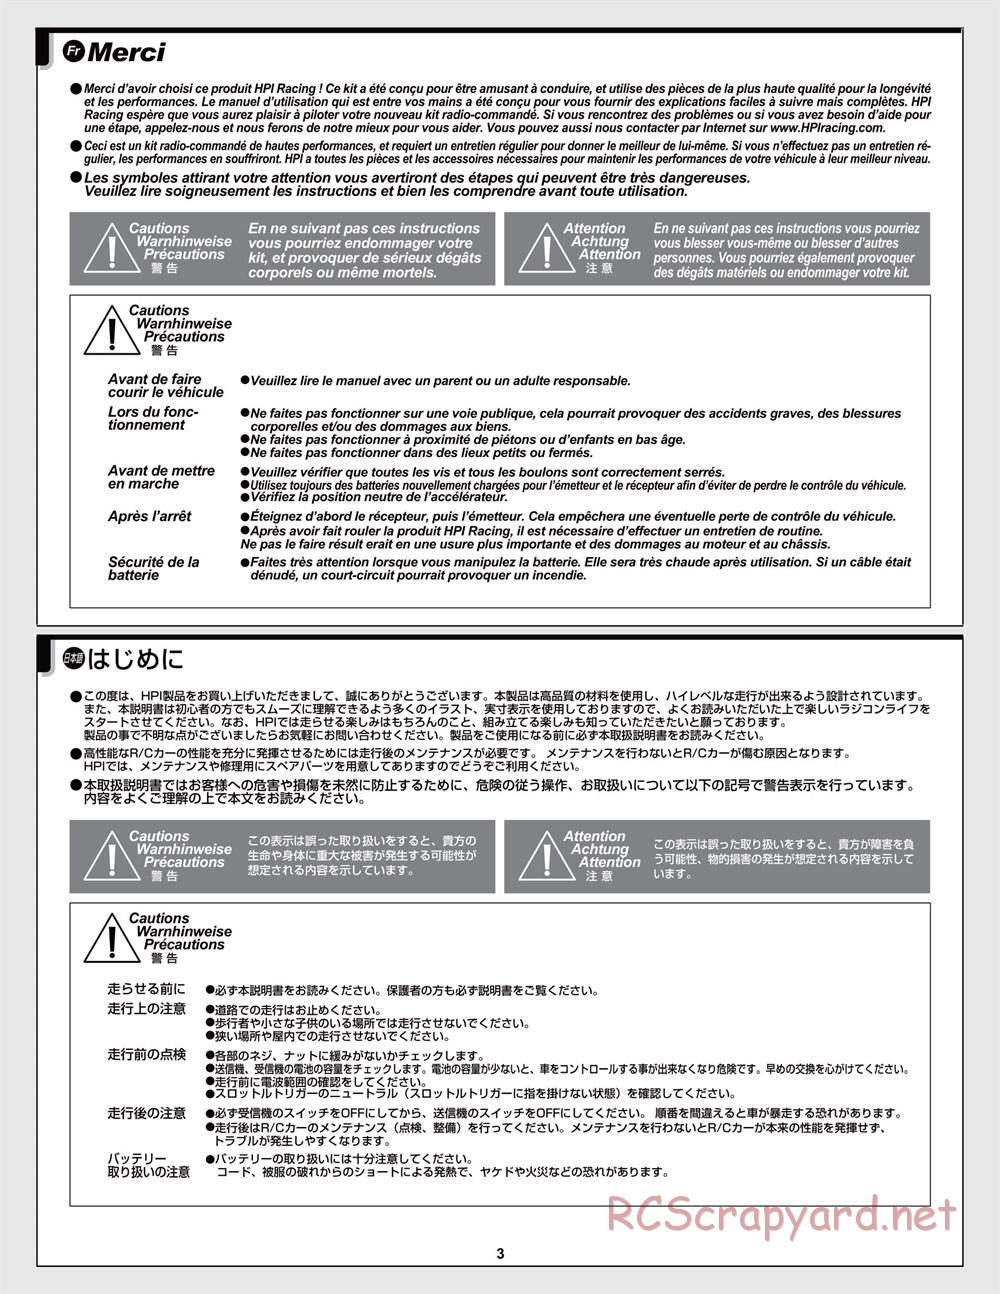 HPI - Jumpshot MT Flux - Manual - Page 3